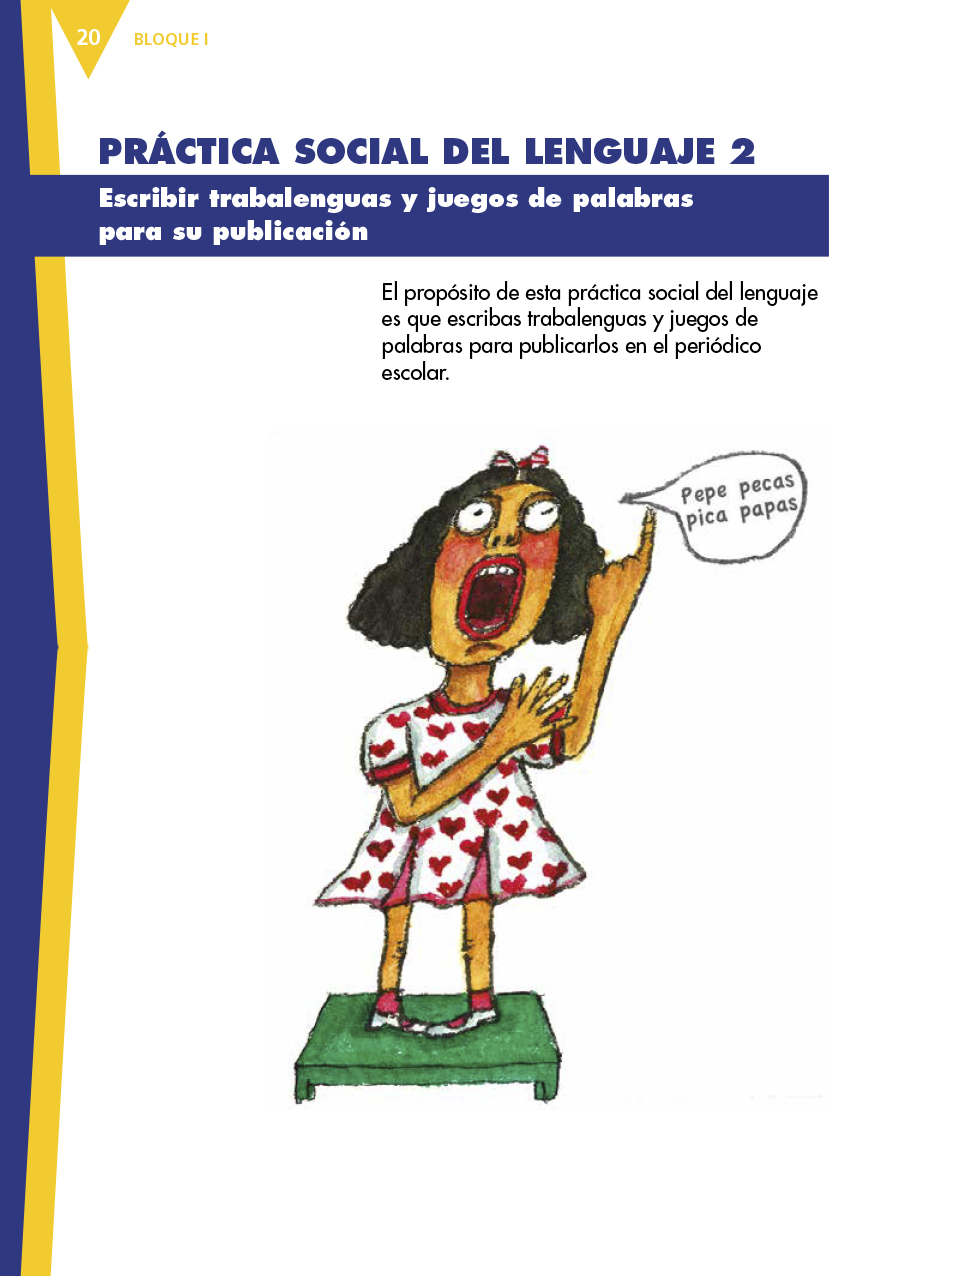 Español Cuarto grado 2017-2018 - Página 20 - Libros de Texto Online